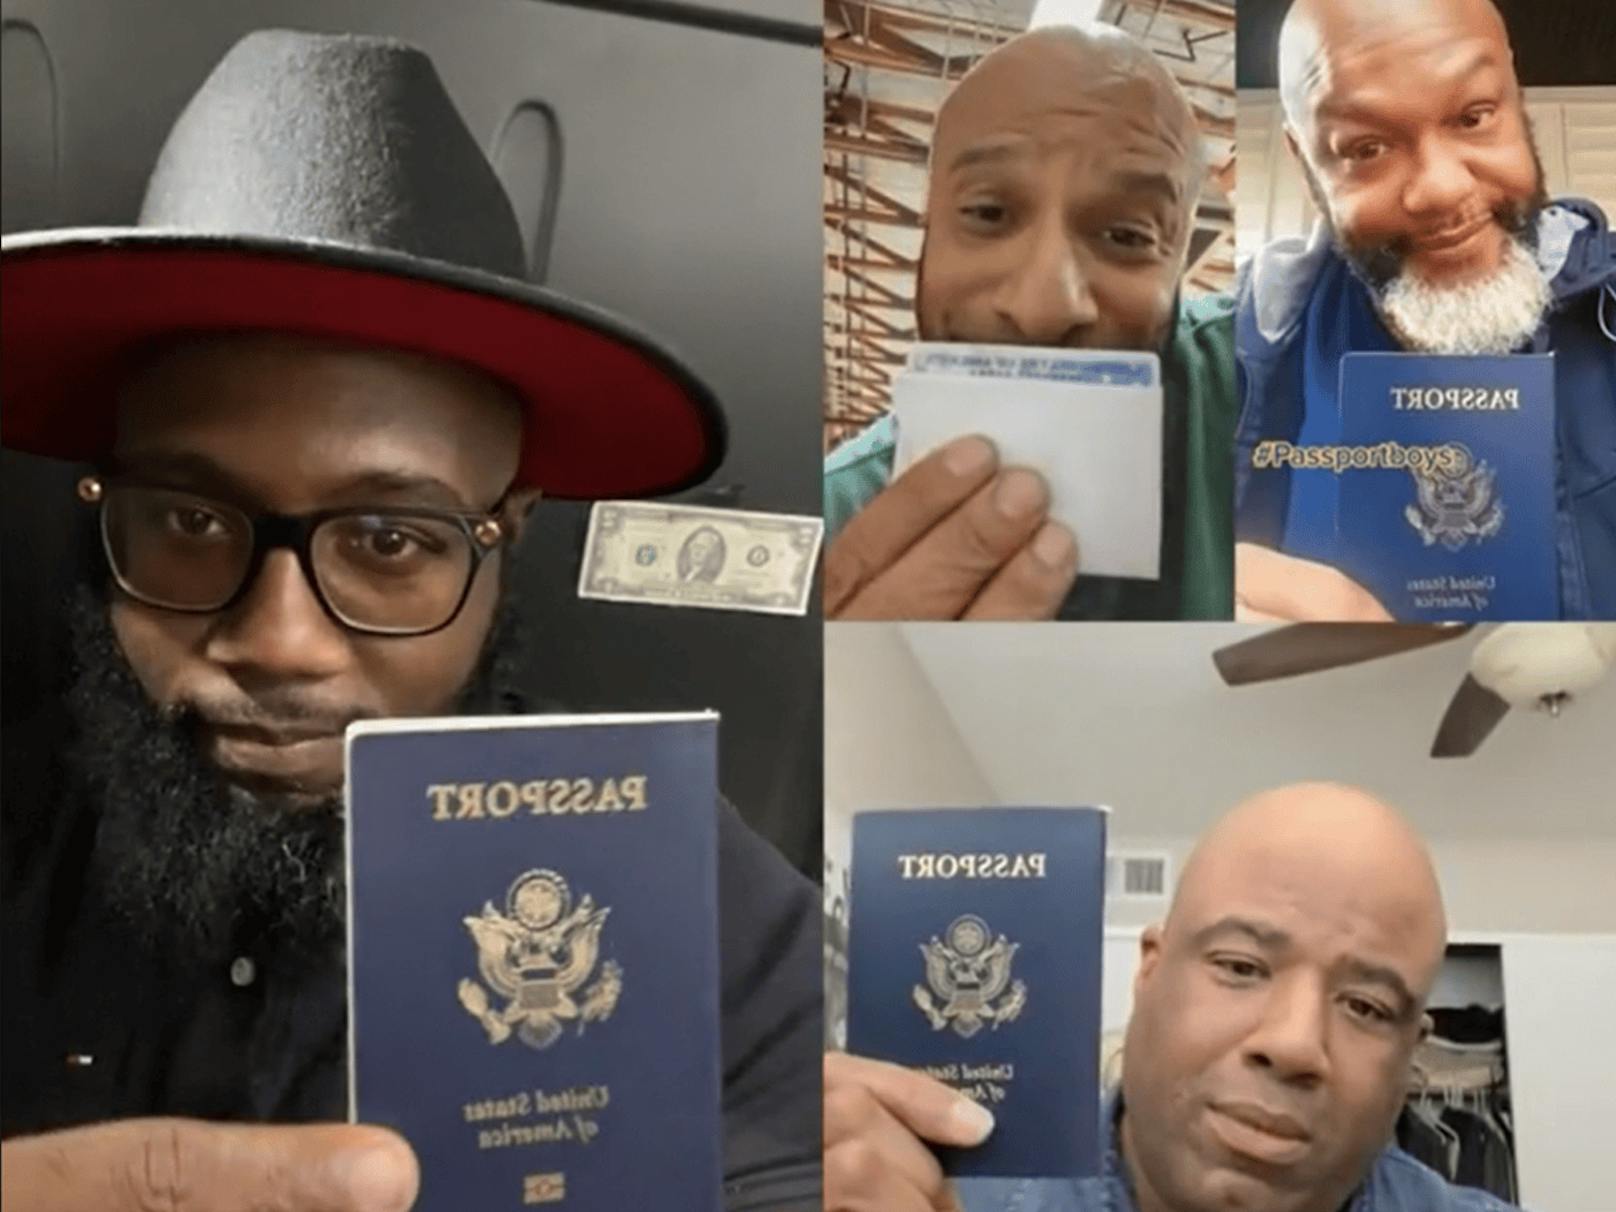 Auf Social Media haben sie Diskussionen angestoßen: Die sogenannten Passport-Bros finden in ihren Heimatländern keine "traditionellen Partnerinnen" mehr.